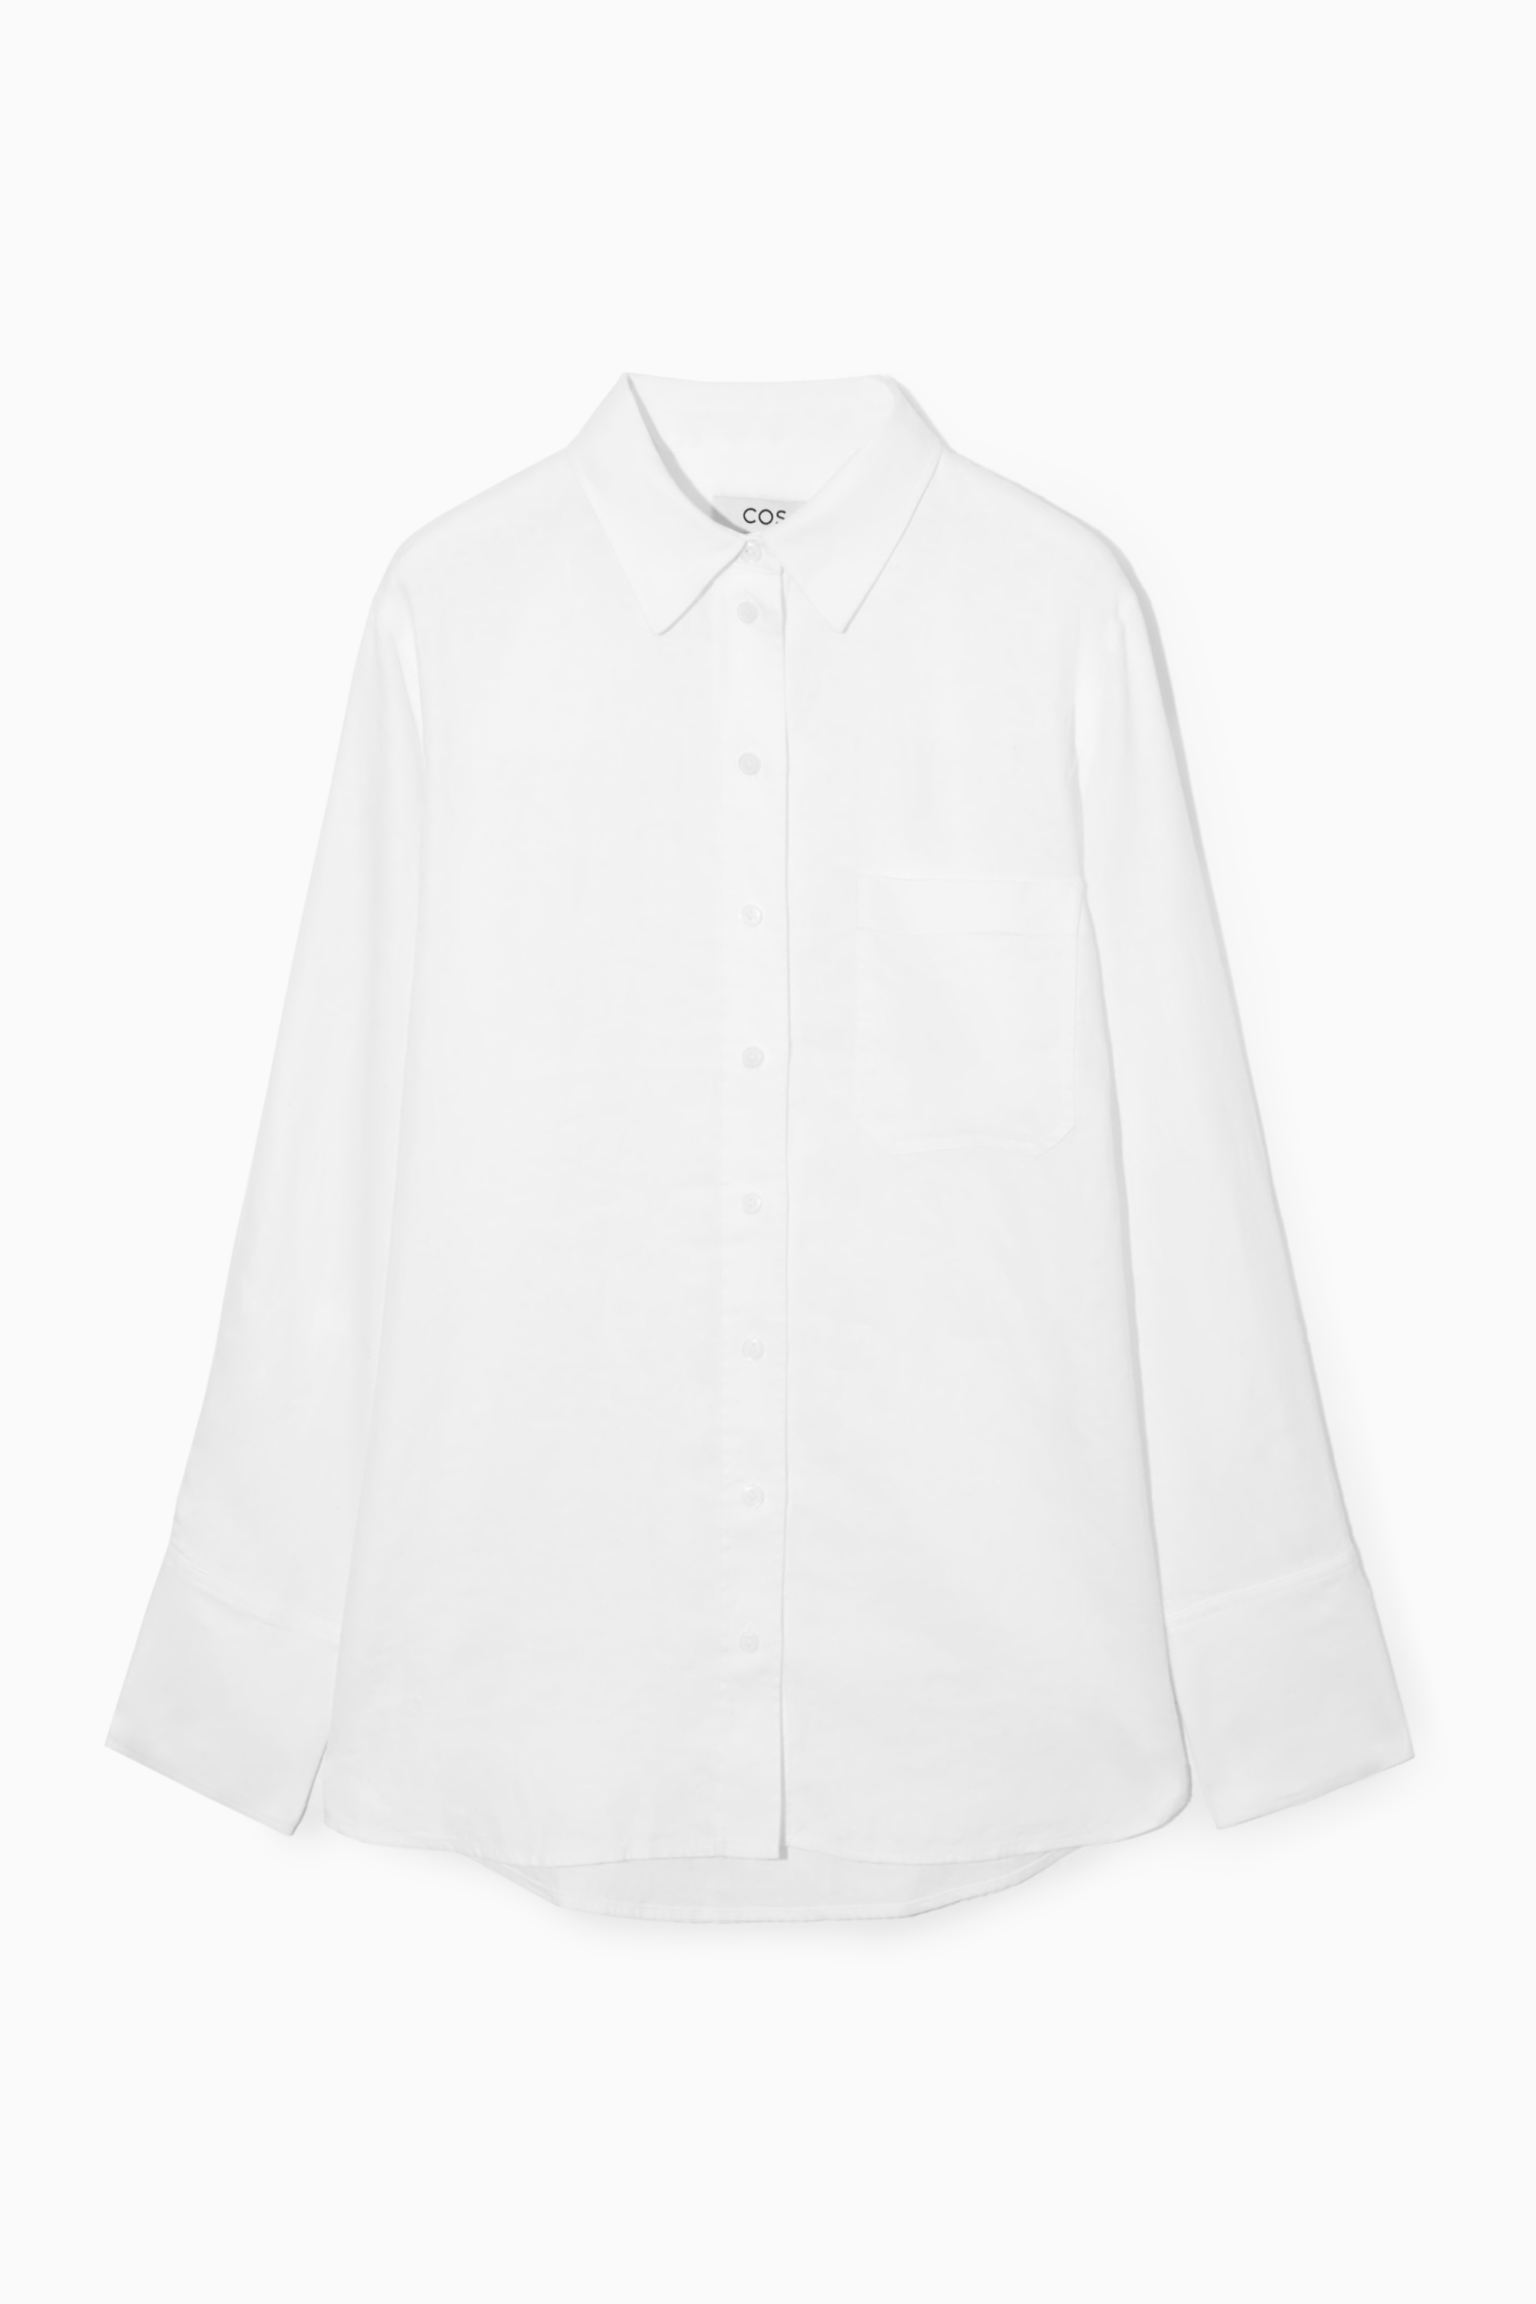 Рубашка женская COS 1163633004 белая 42 EU (доставка из-за рубежа)